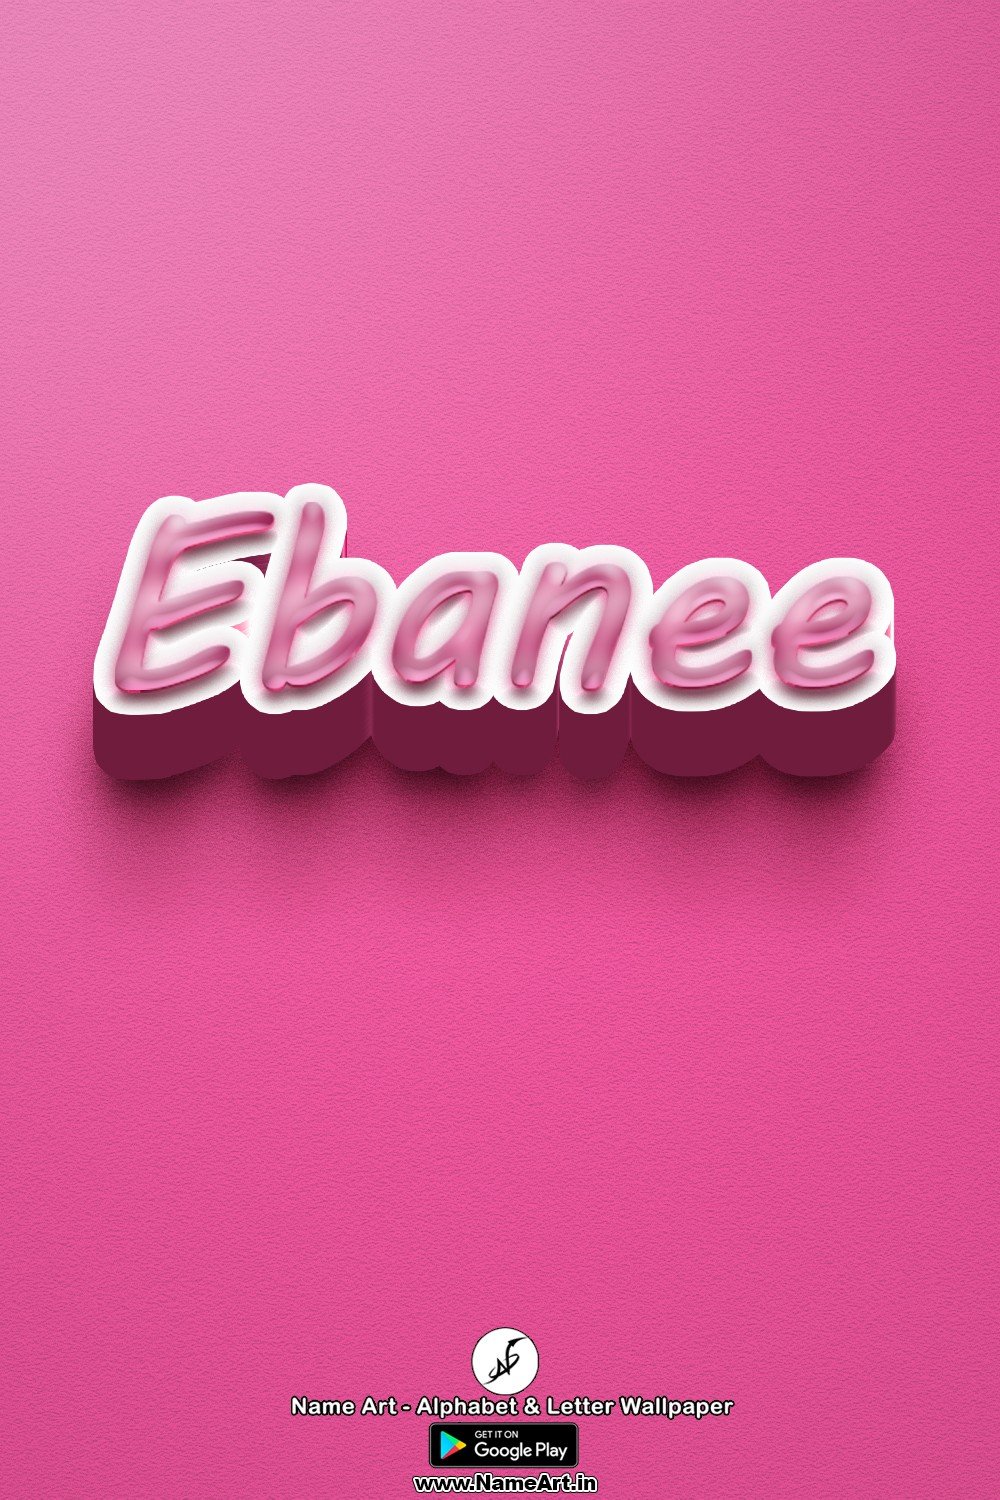 Ebanee | Whatsapp Status Ebanee | Happy Birthday Ebanee !! | New Whatsapp Status Ebanee Images |